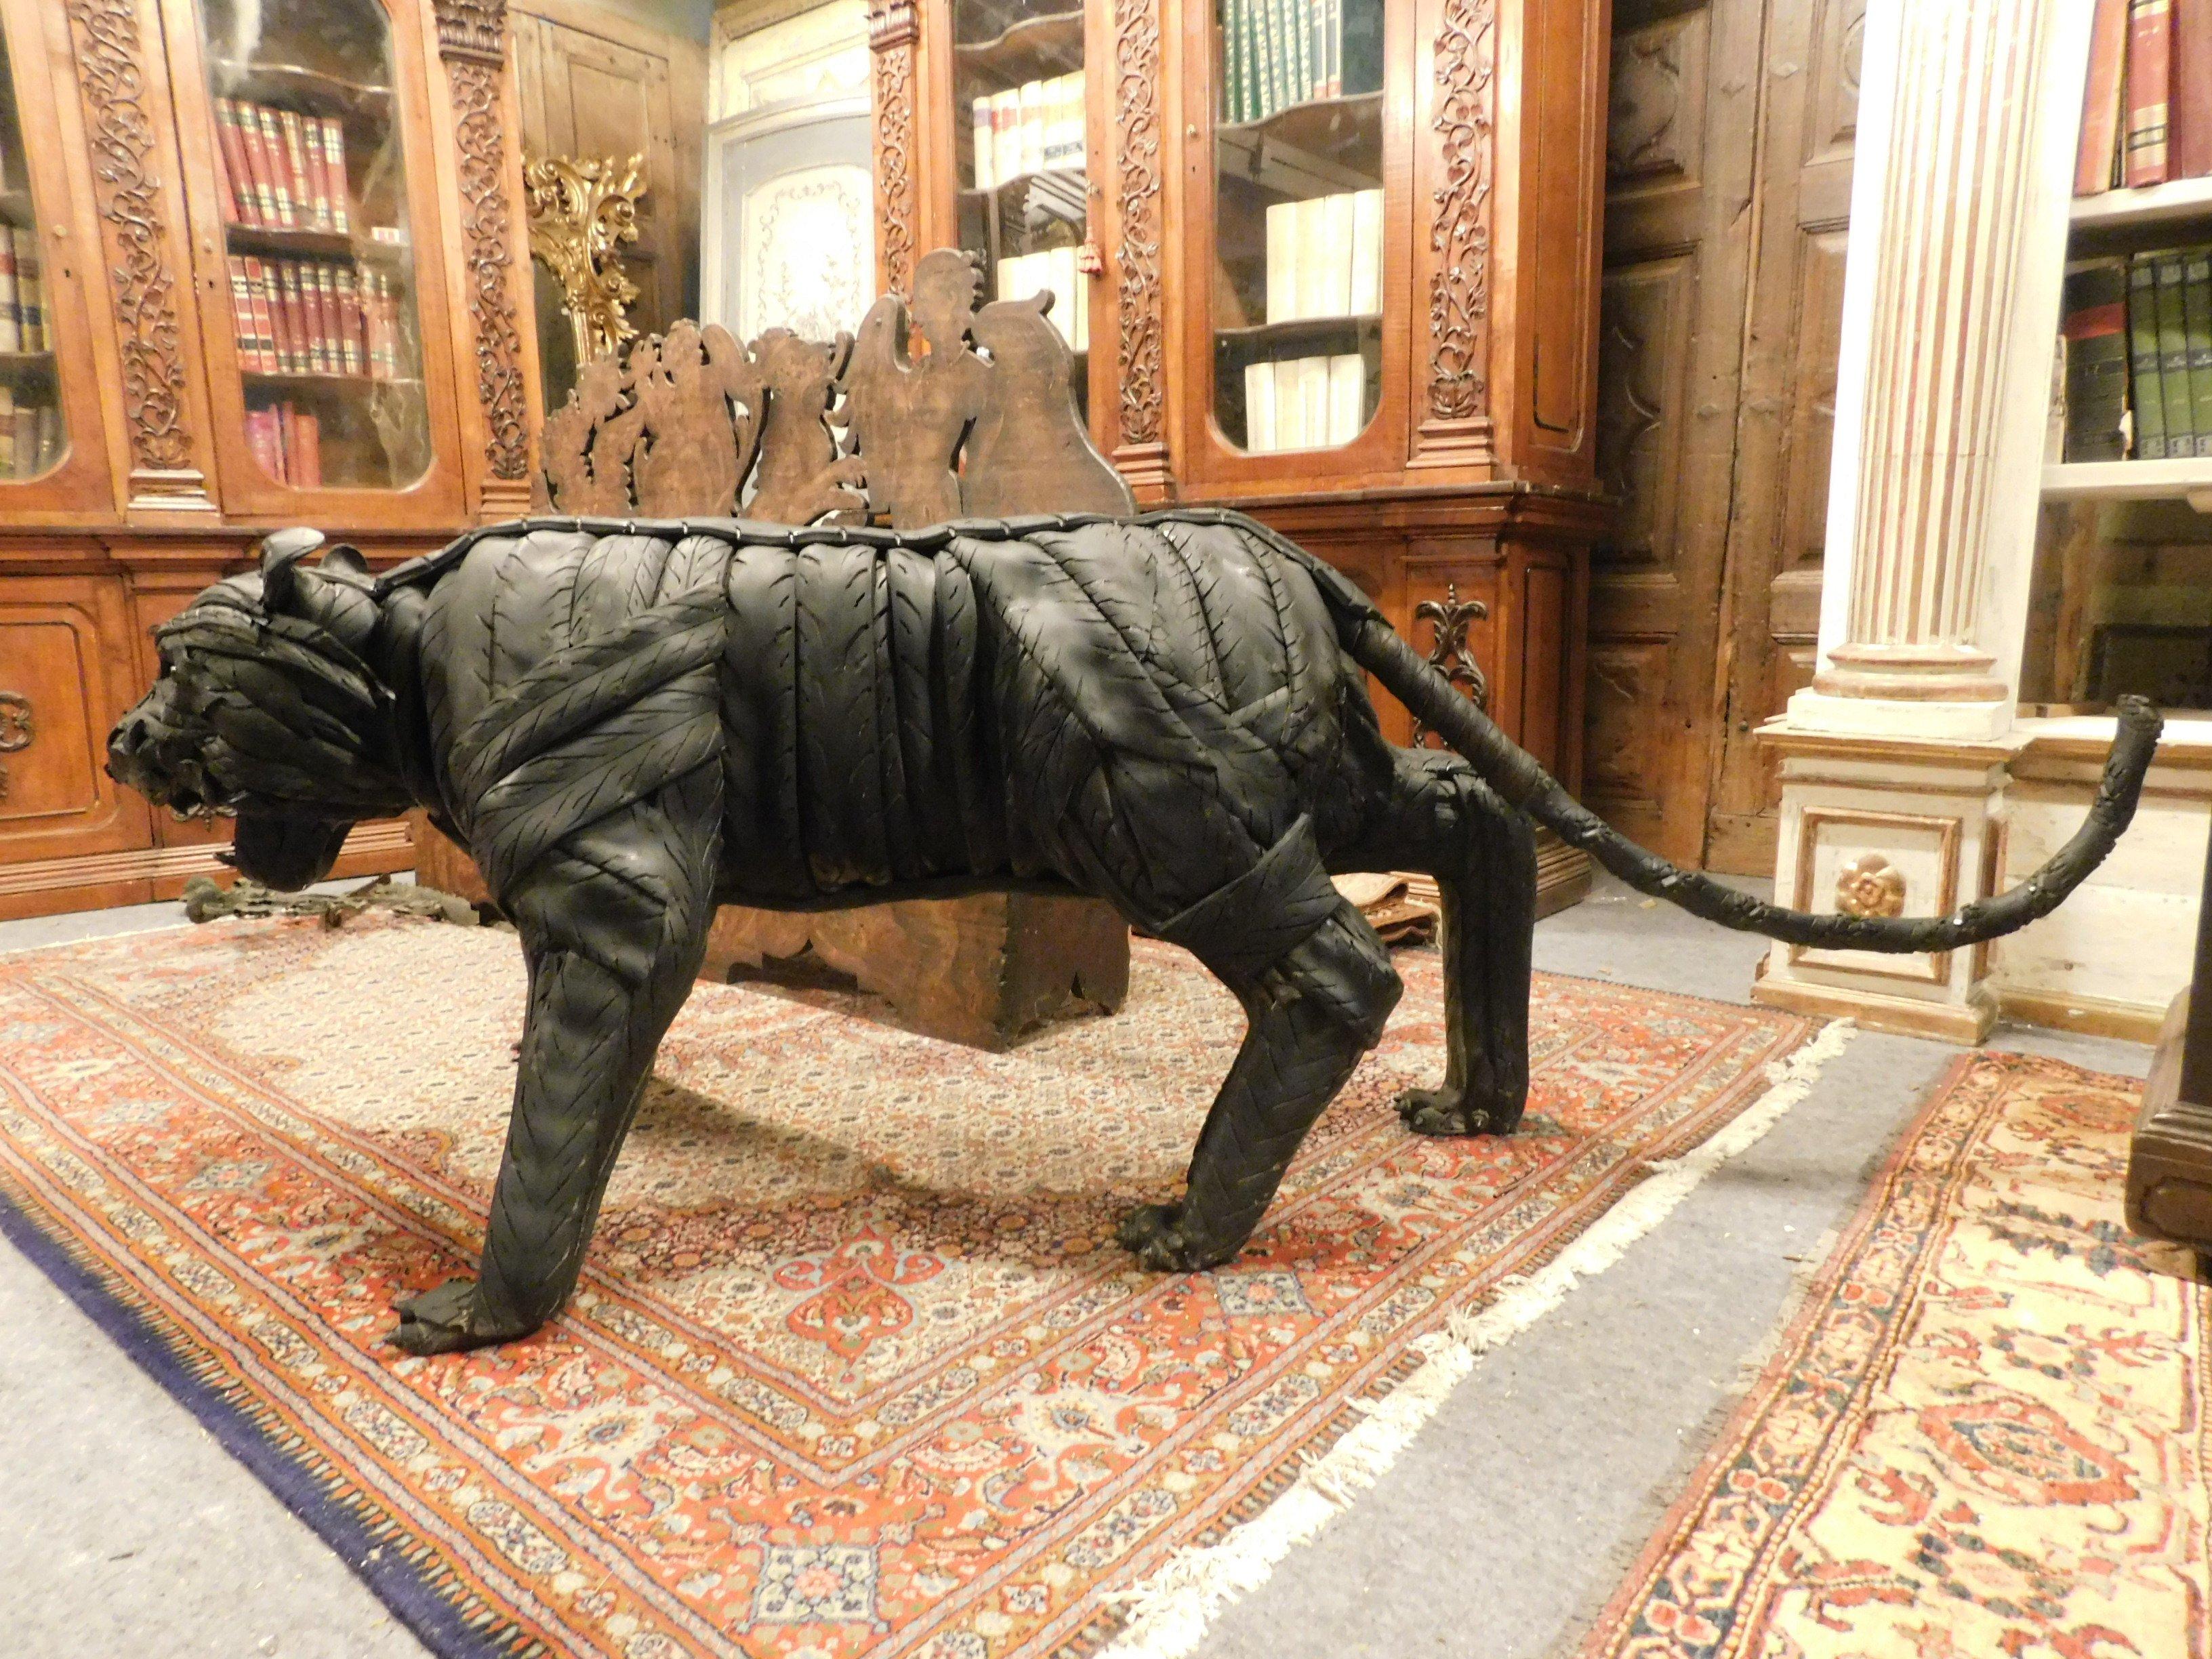 Schwarzer Panther Statue in den ersten Jahrzehnten des 1900er bda italienischen Künstler mit viel Phantasie, aus einem Eisen-Rüstung mit wiederhergestellten Gummi, sehr elegant und Symbol der Macht, perfekt in einem Luxus-Eingang oder in einem